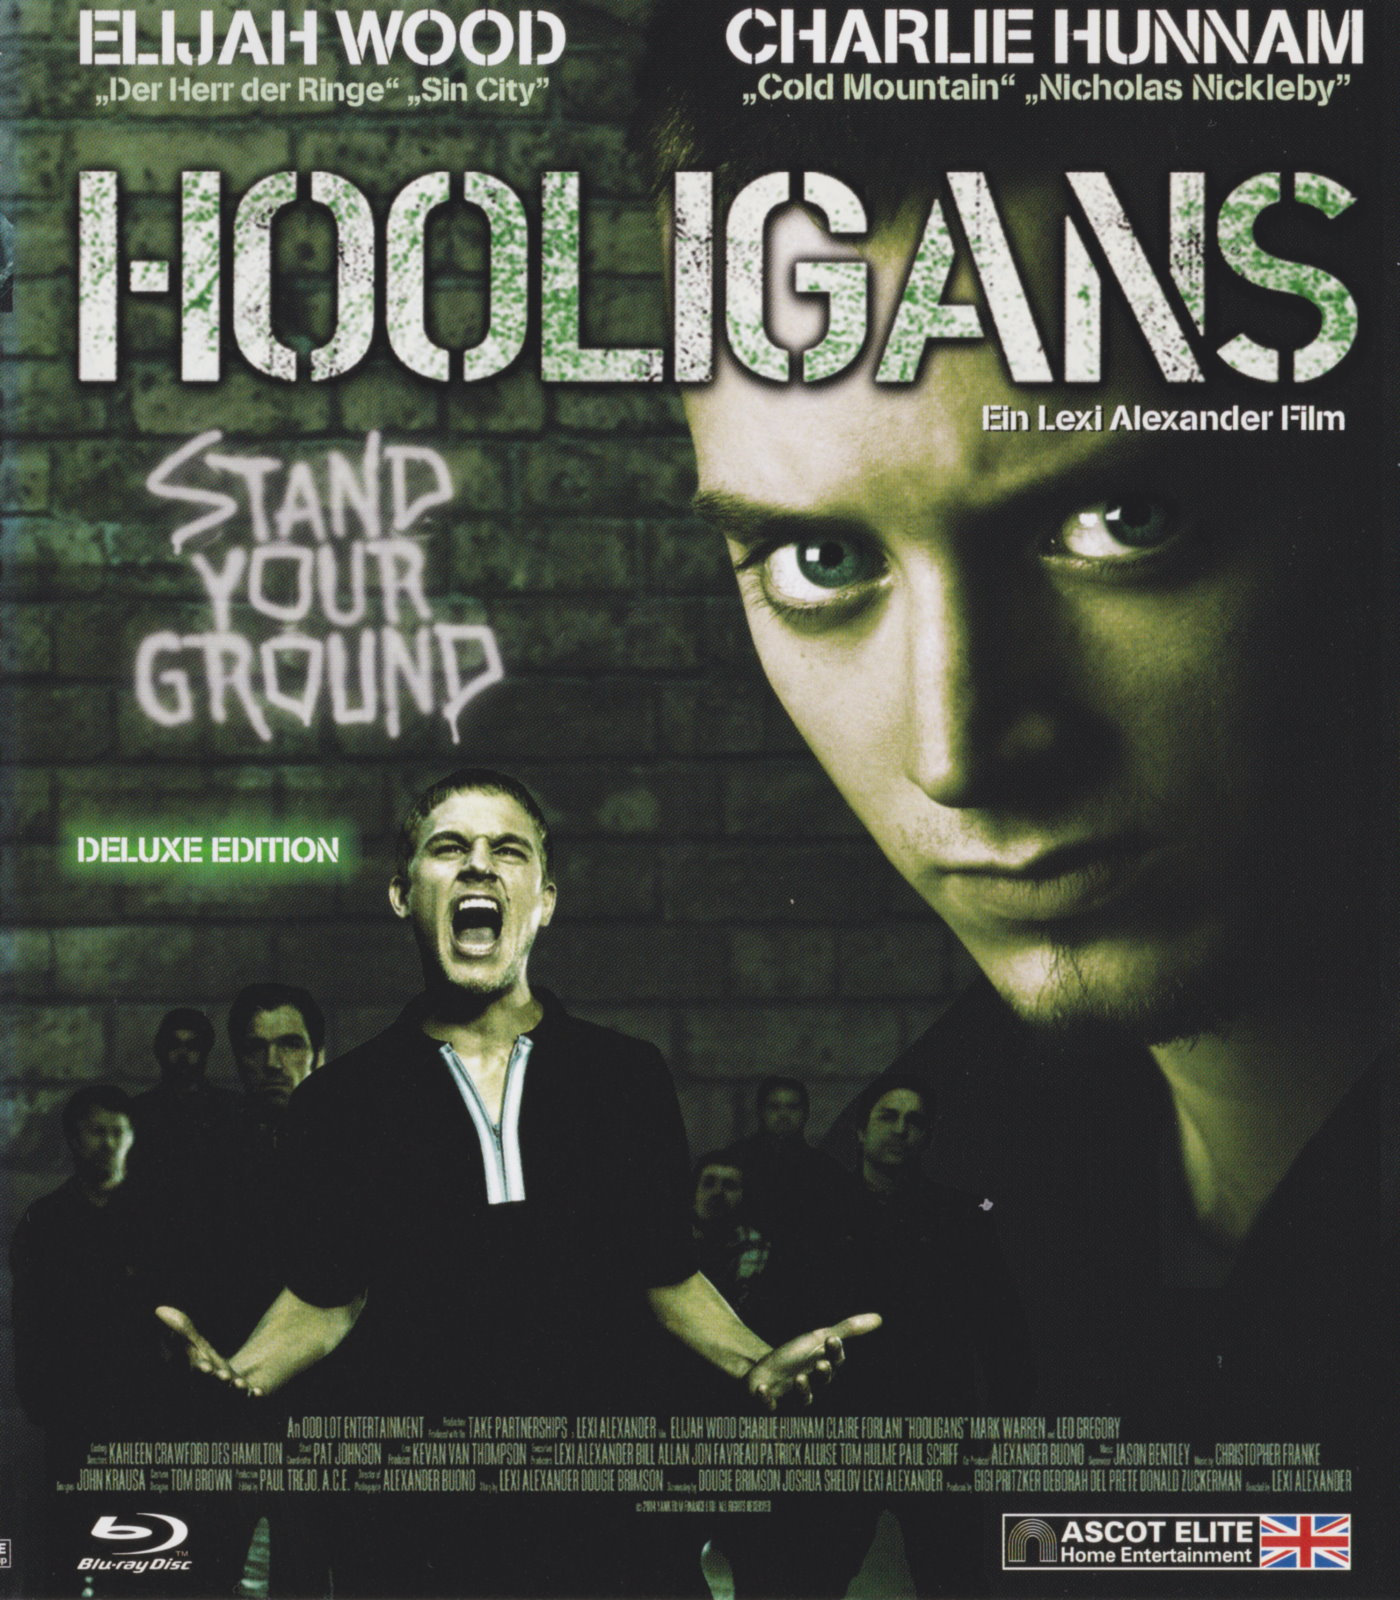 Cover - Hooligans.jpg